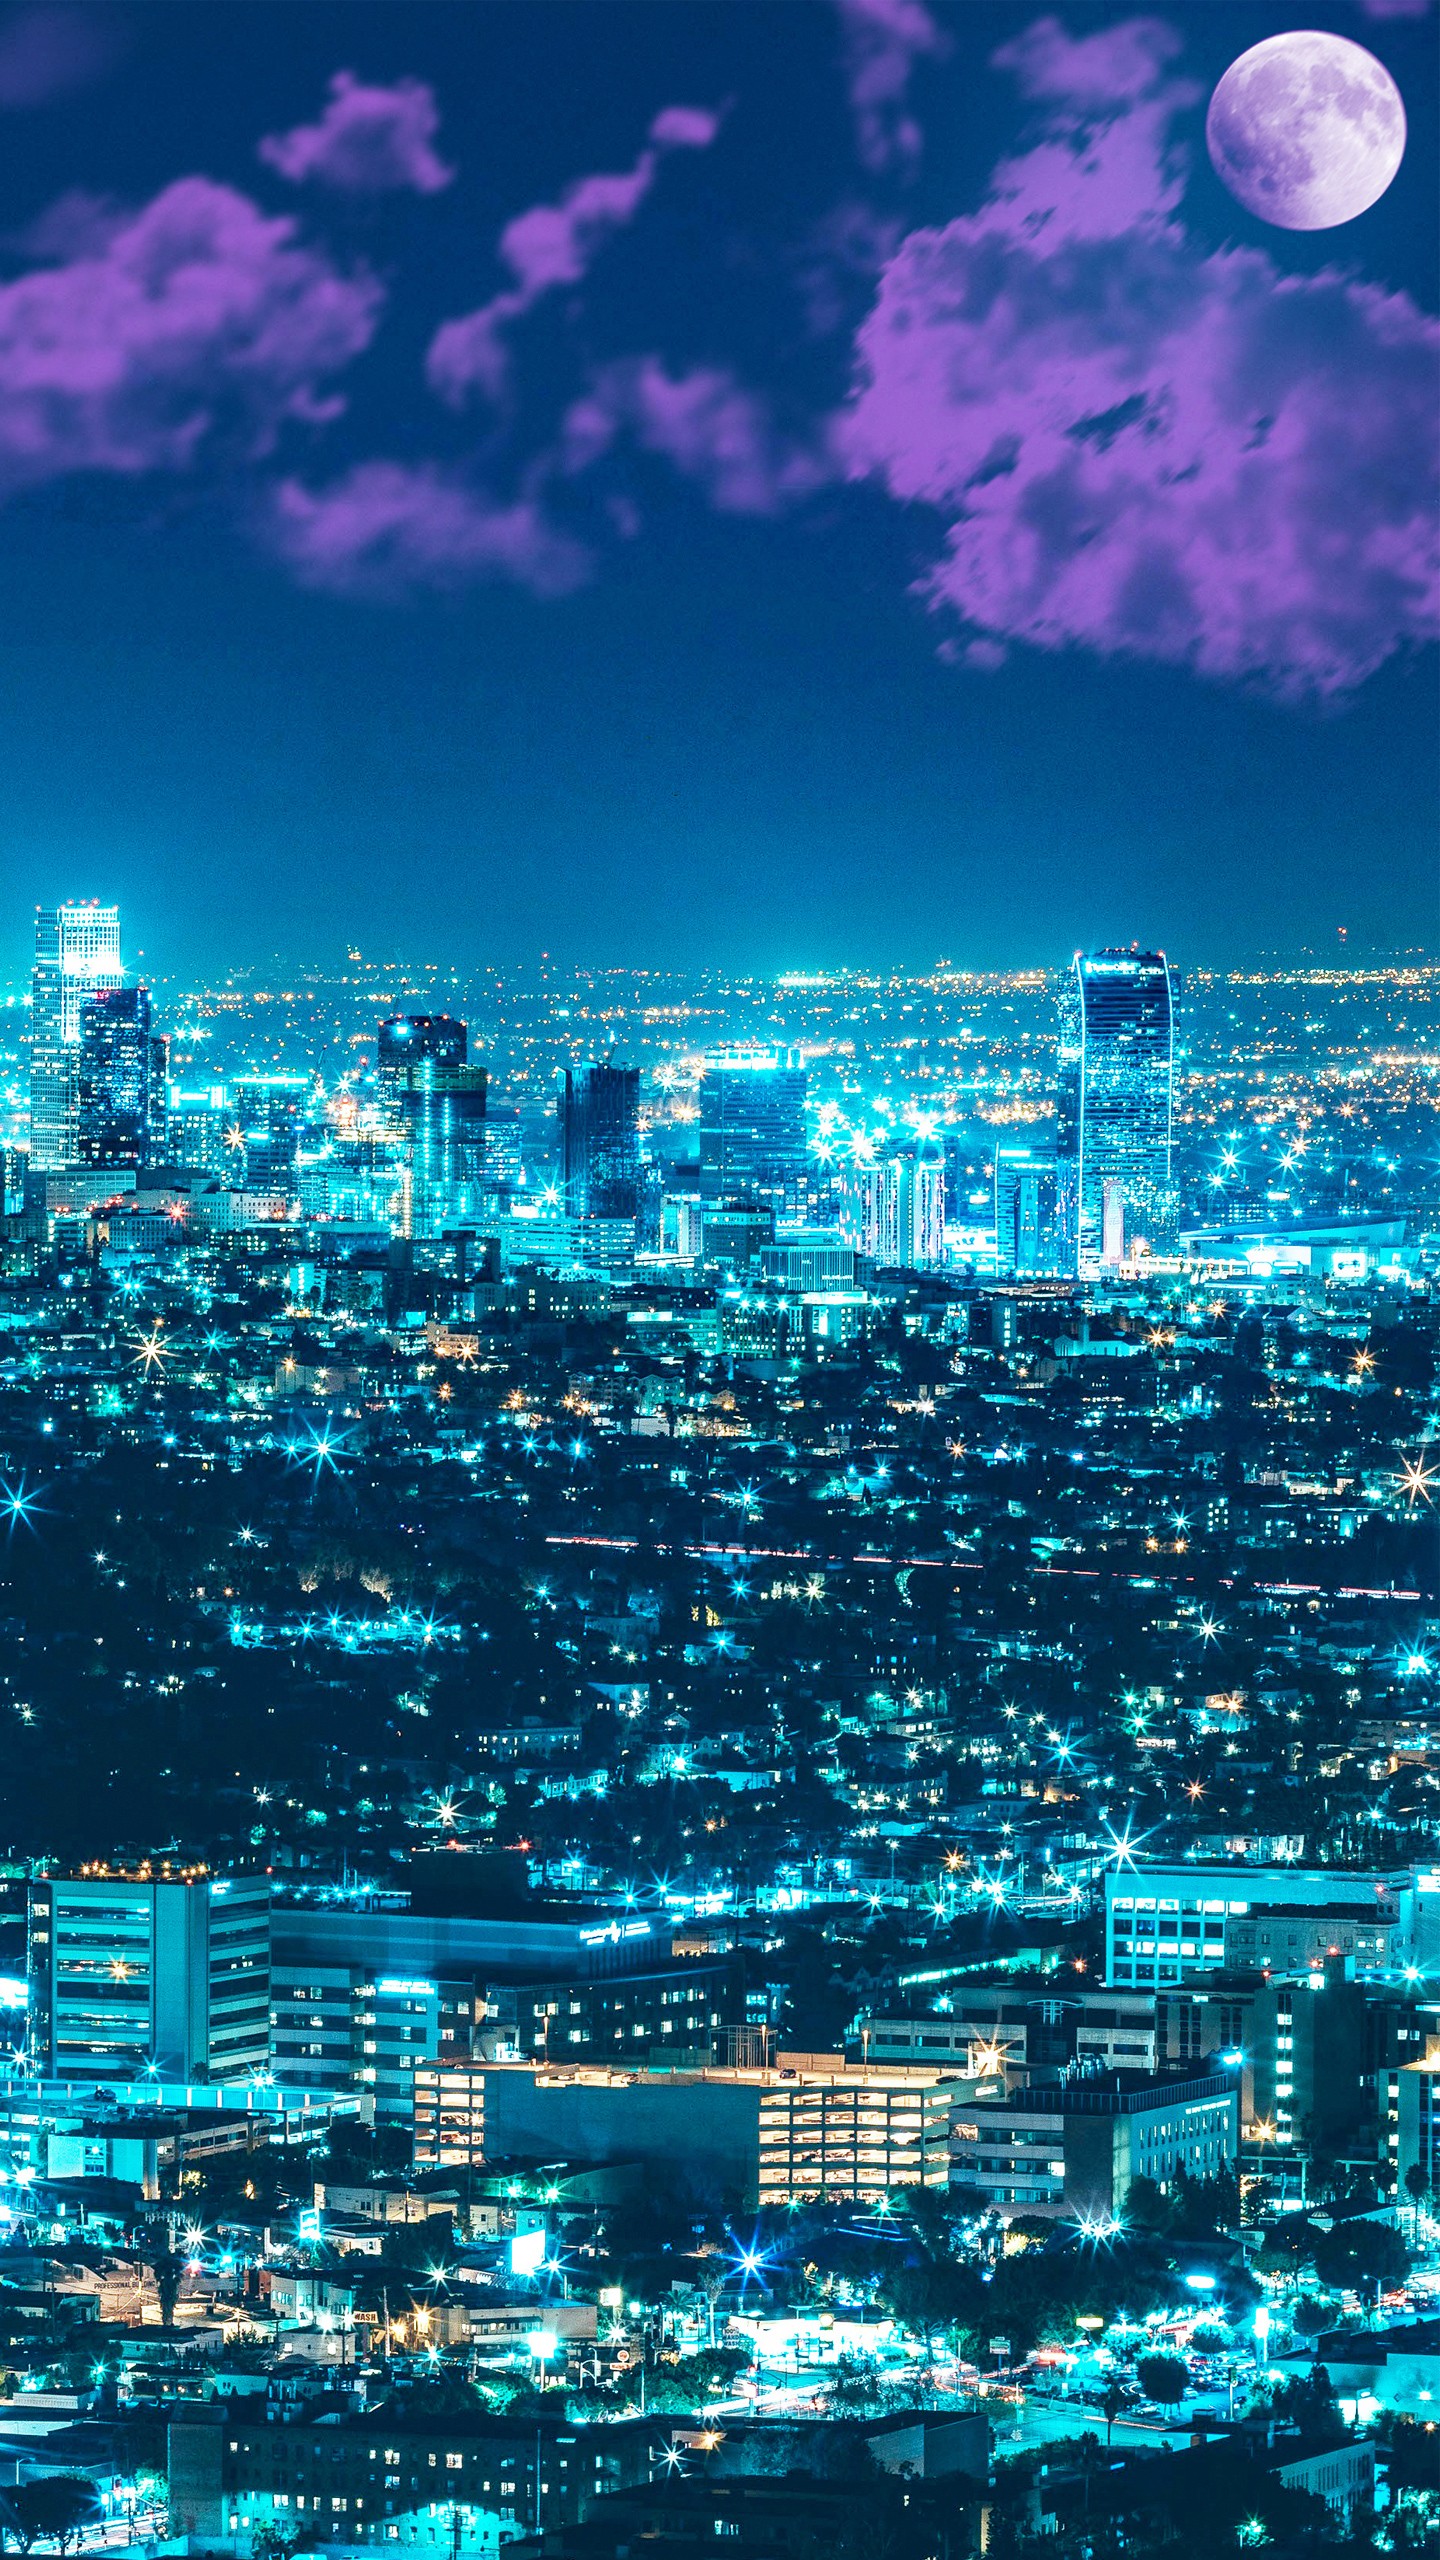 1440 x 2560 4k fond d'écran,paysage urbain,ville,ciel,zone métropolitaine,bleu